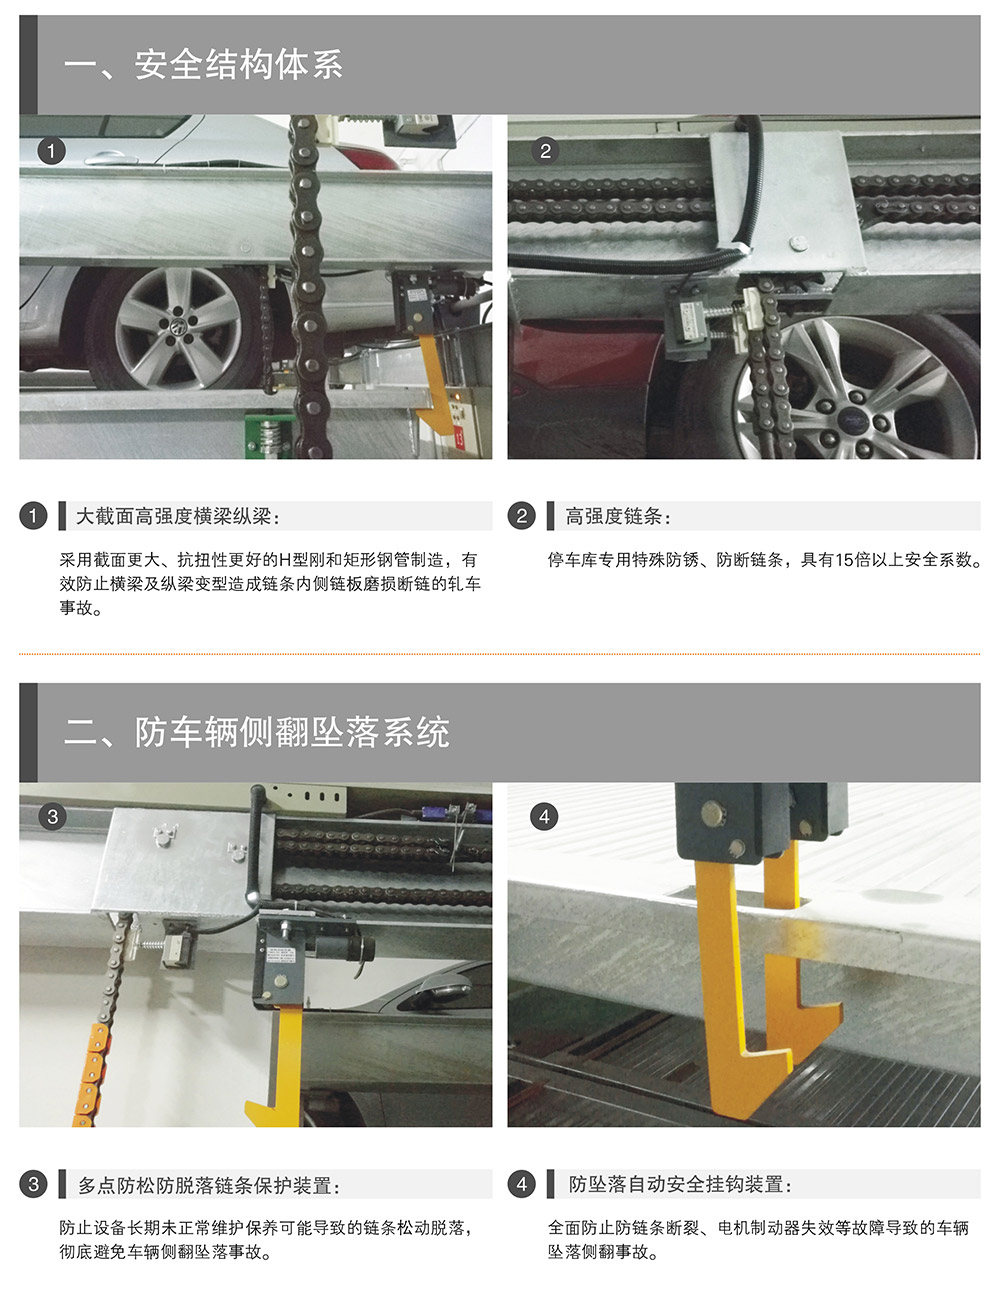 四川成都PSH升降横移停车设备安全结构体系.jpg